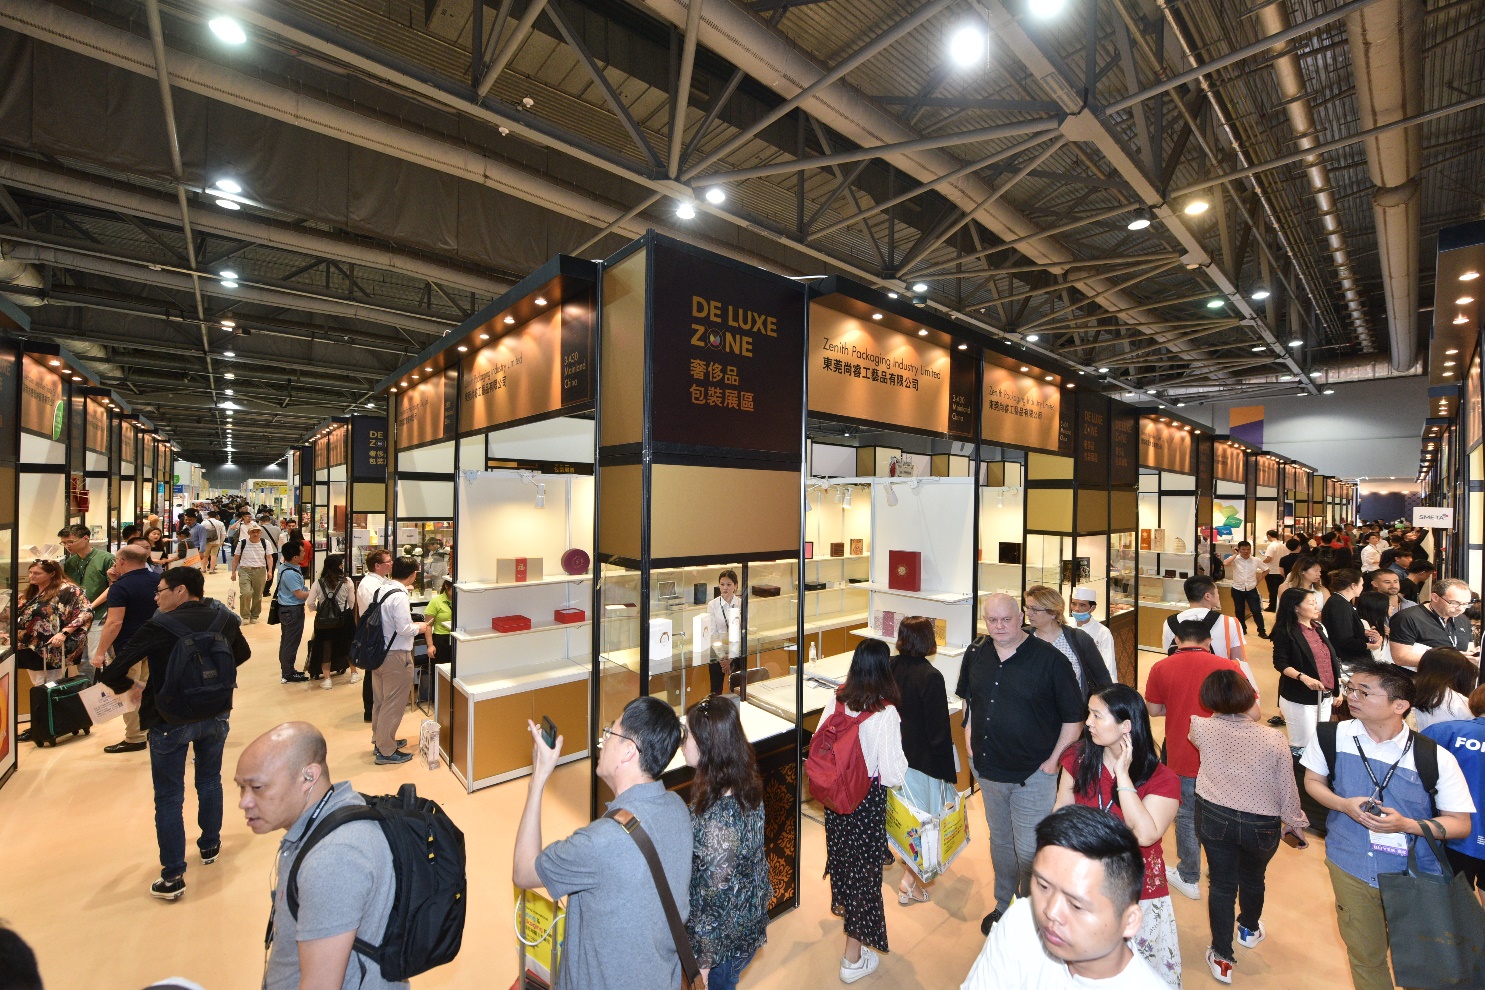 香港贸发局五项时尚产品展四月举行 「展览+」线上线下双轨模式  采购创意产品激发生活灵感